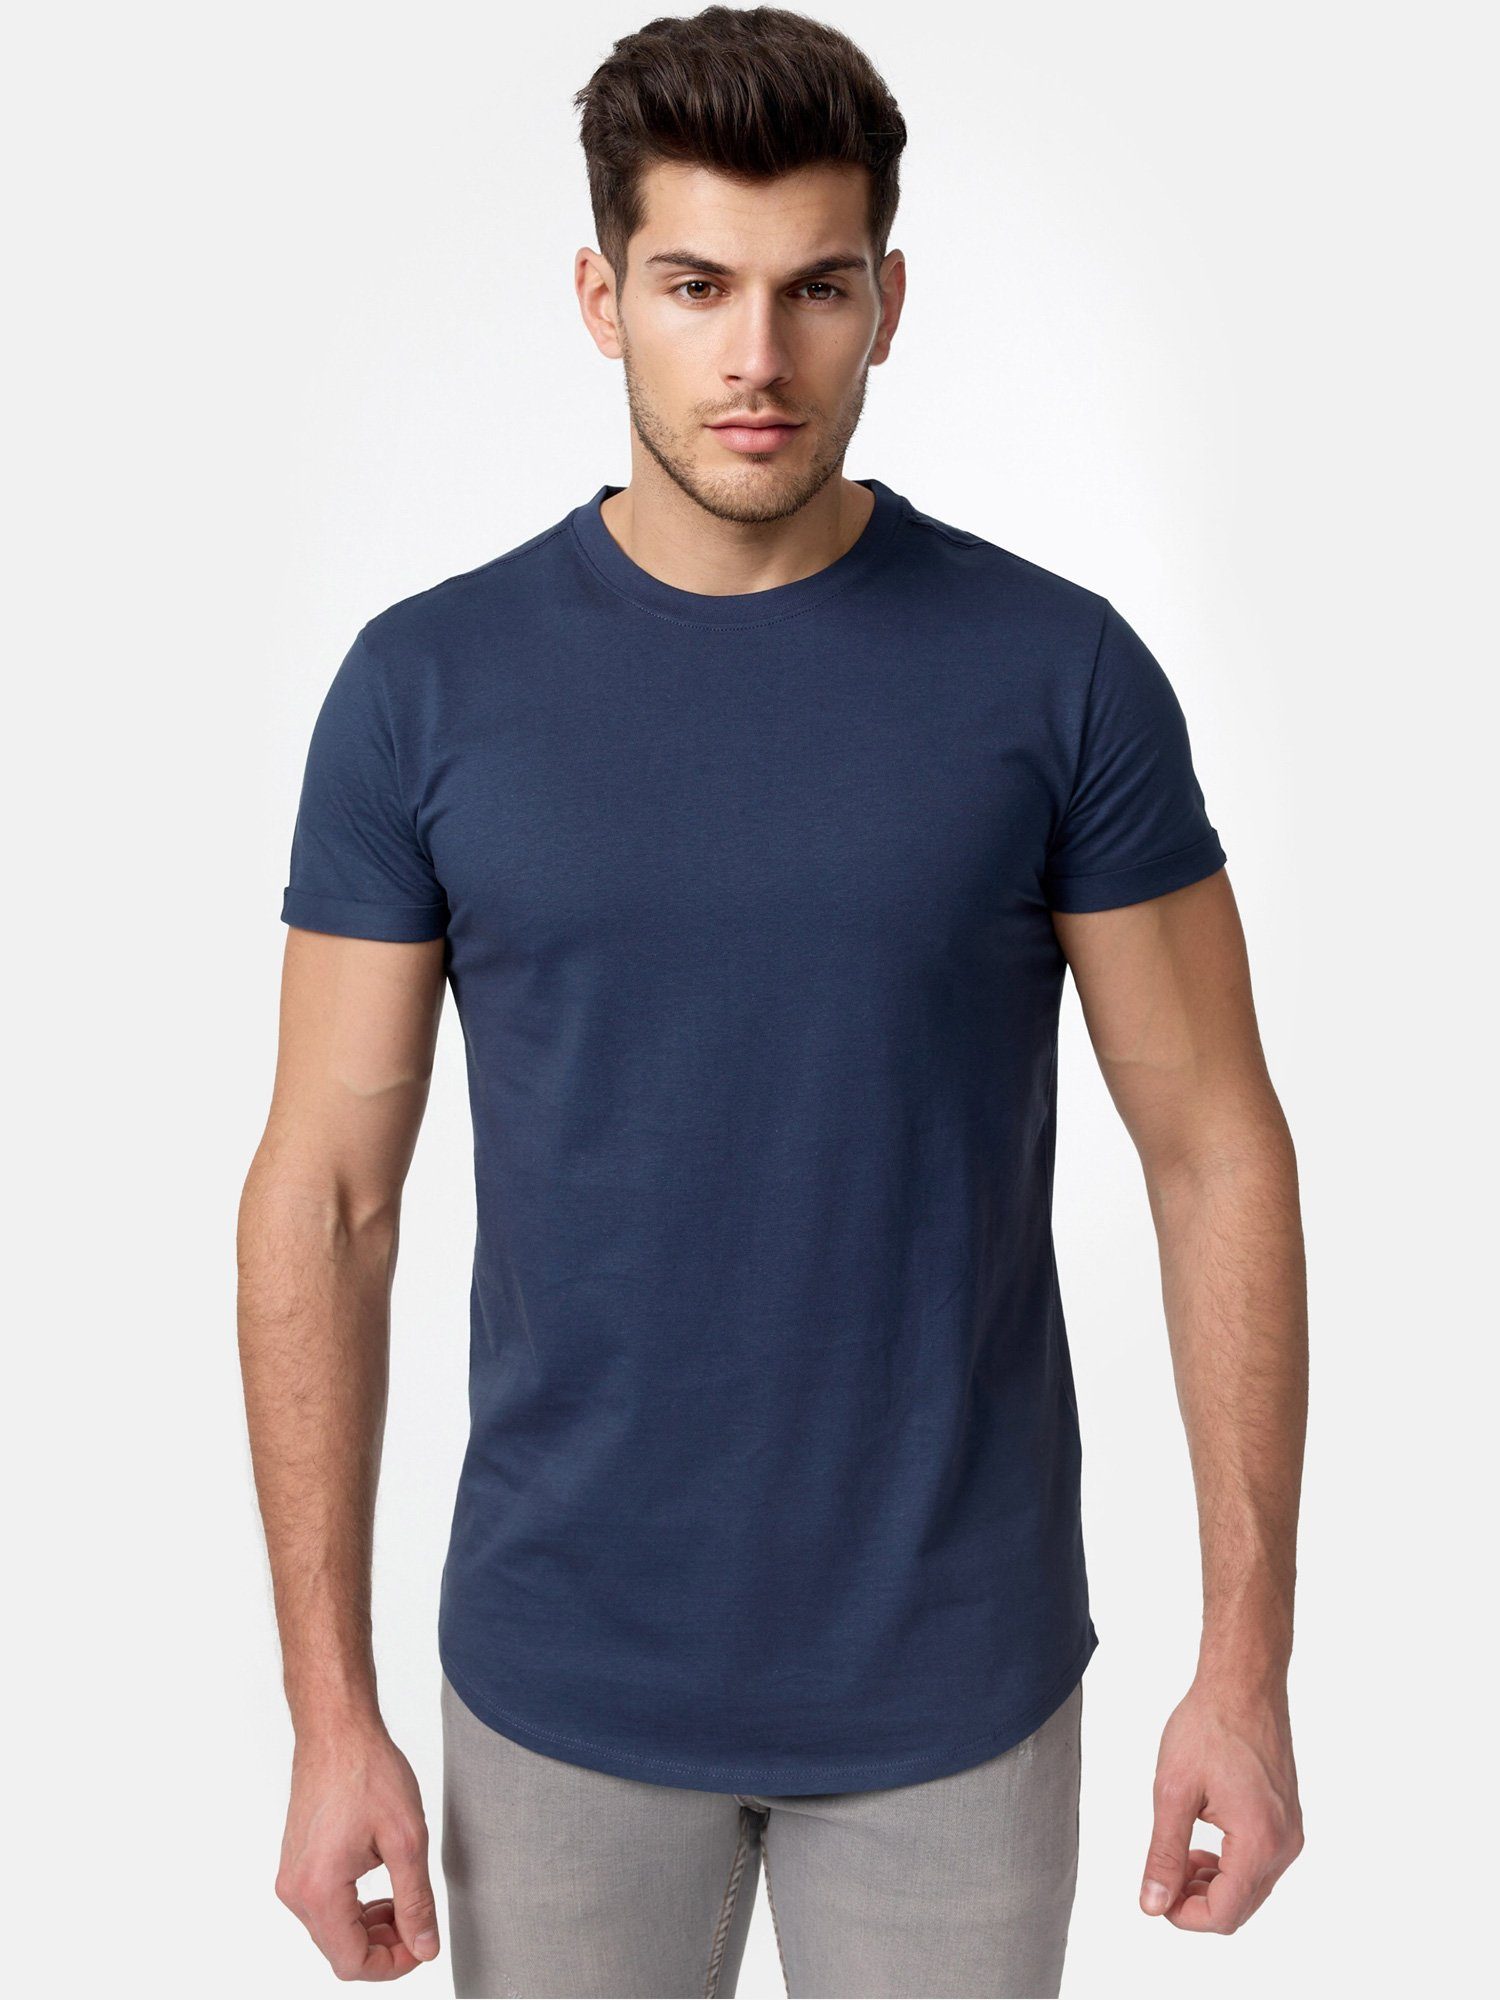 Tazzio T-Shirt Basic Rundhalsshirt navy E105 Herren